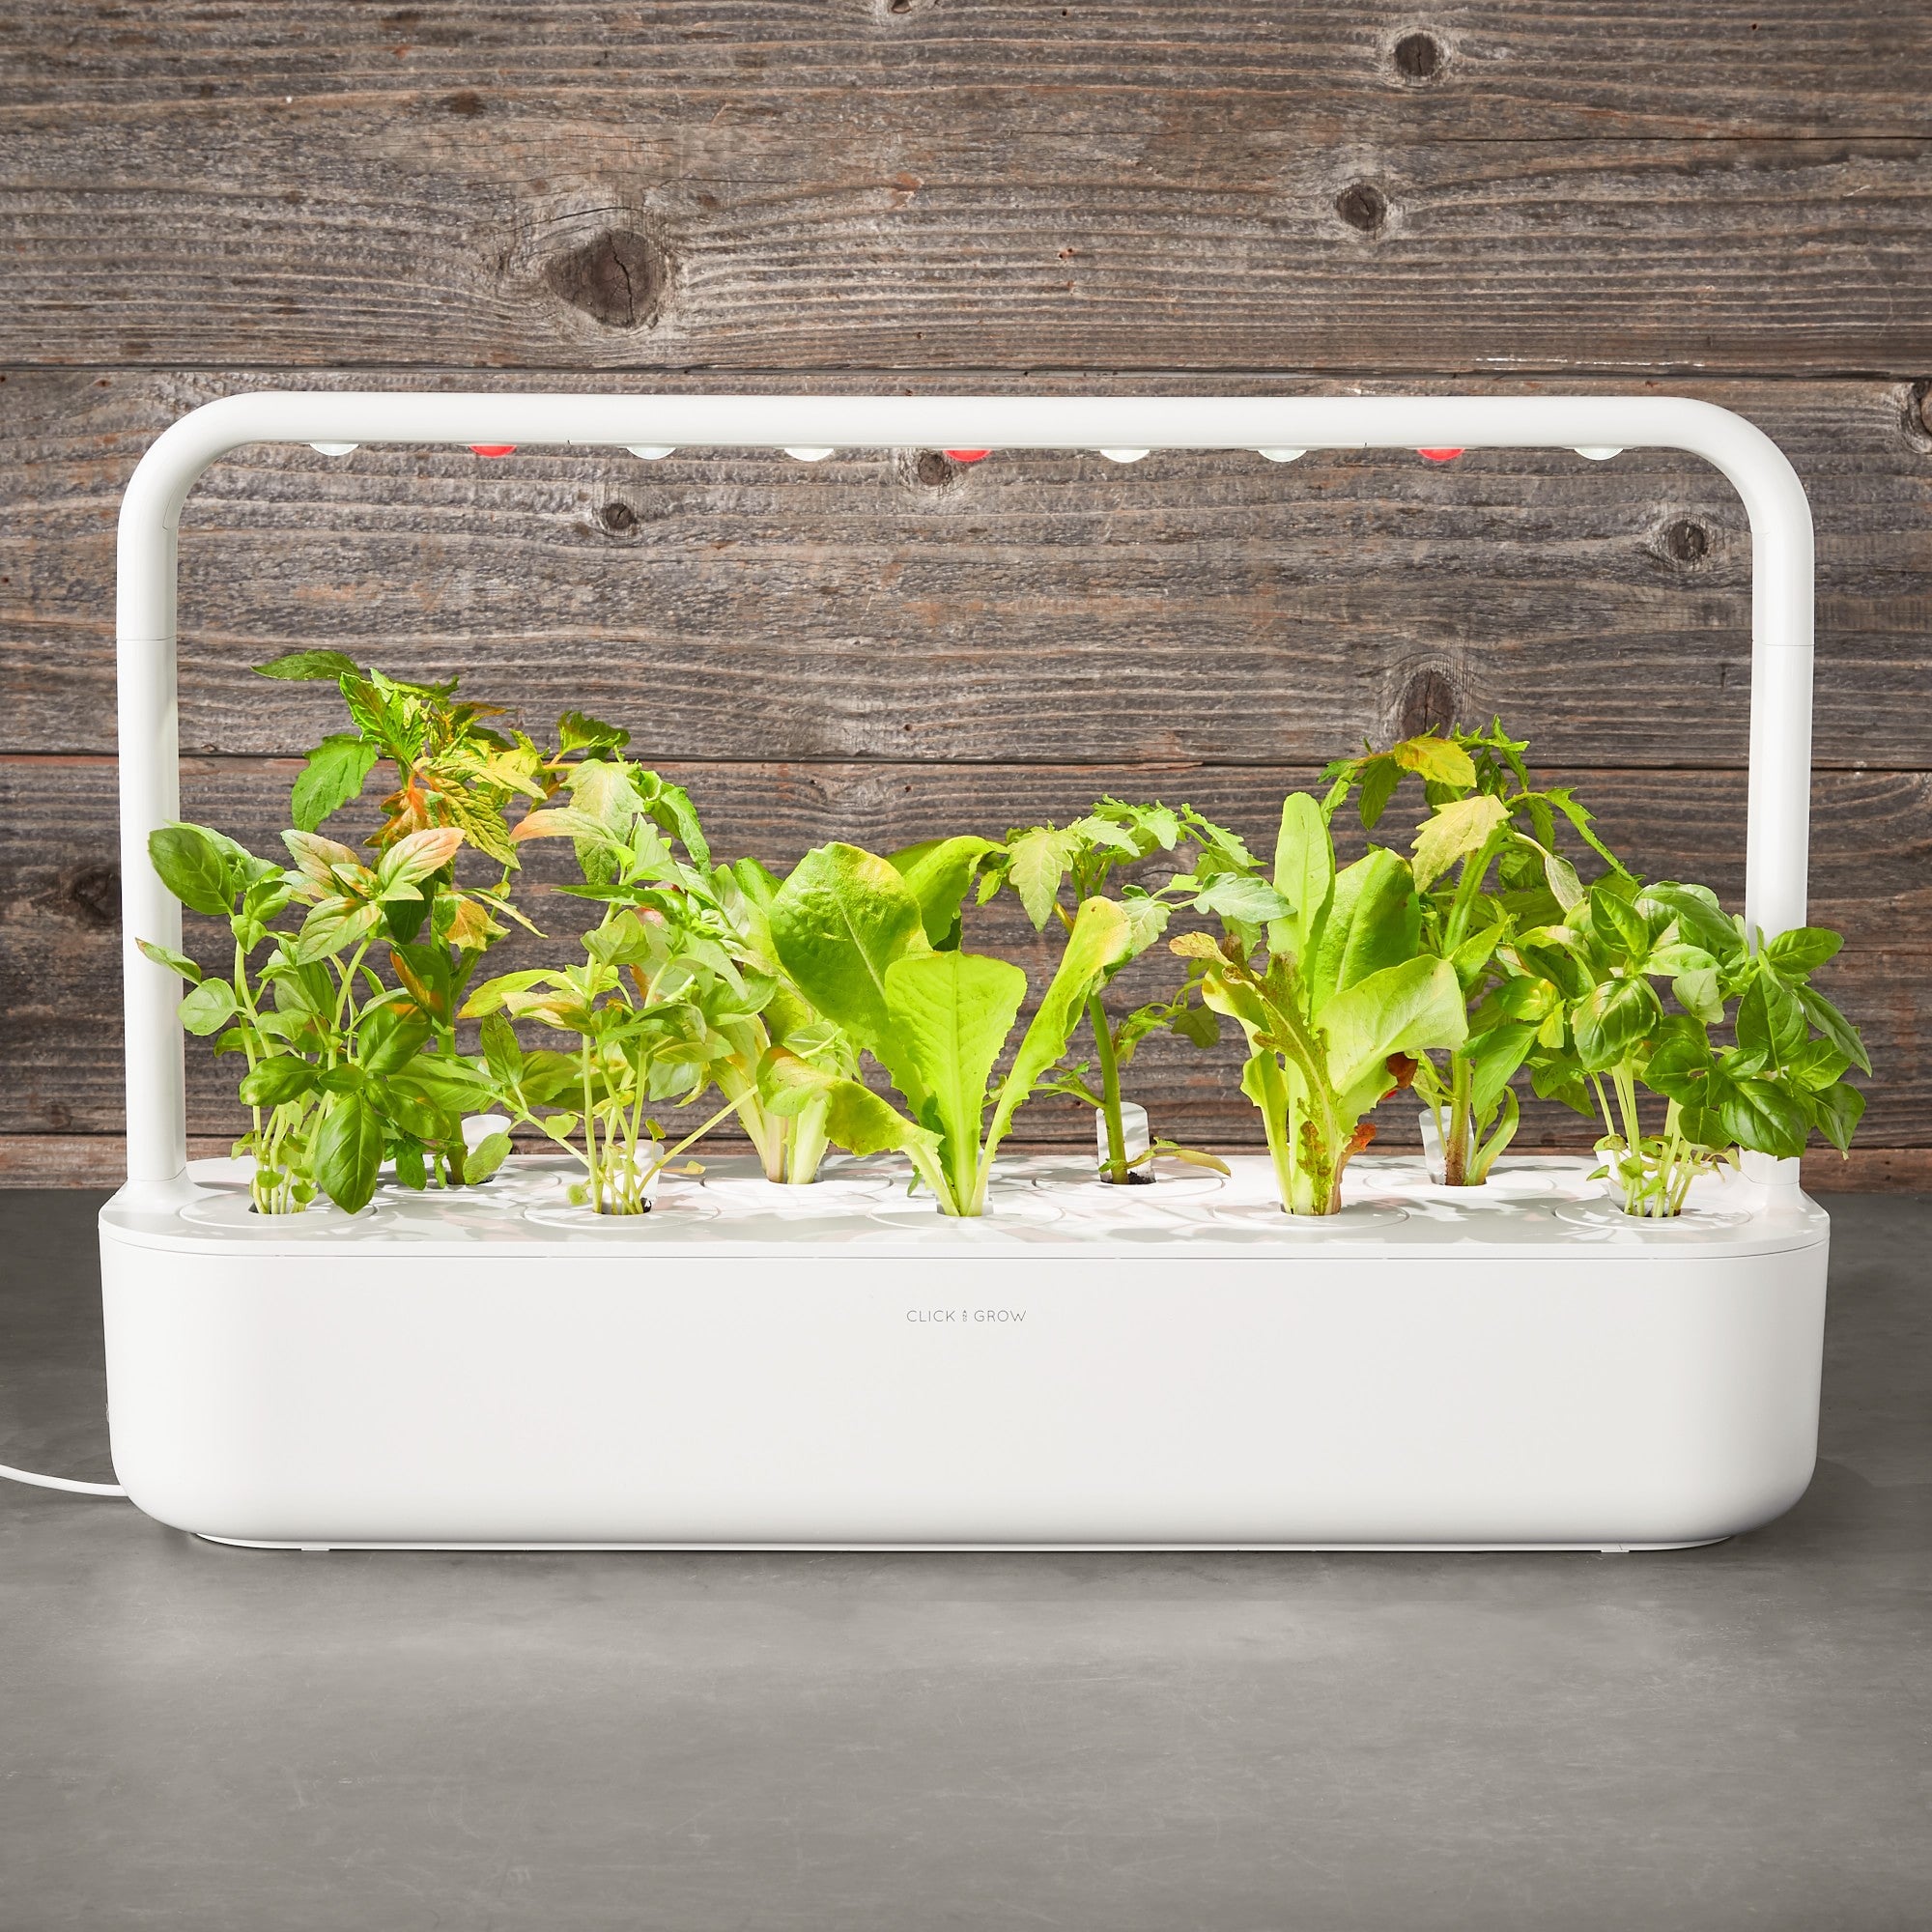 Click & Grow Smart Garden System